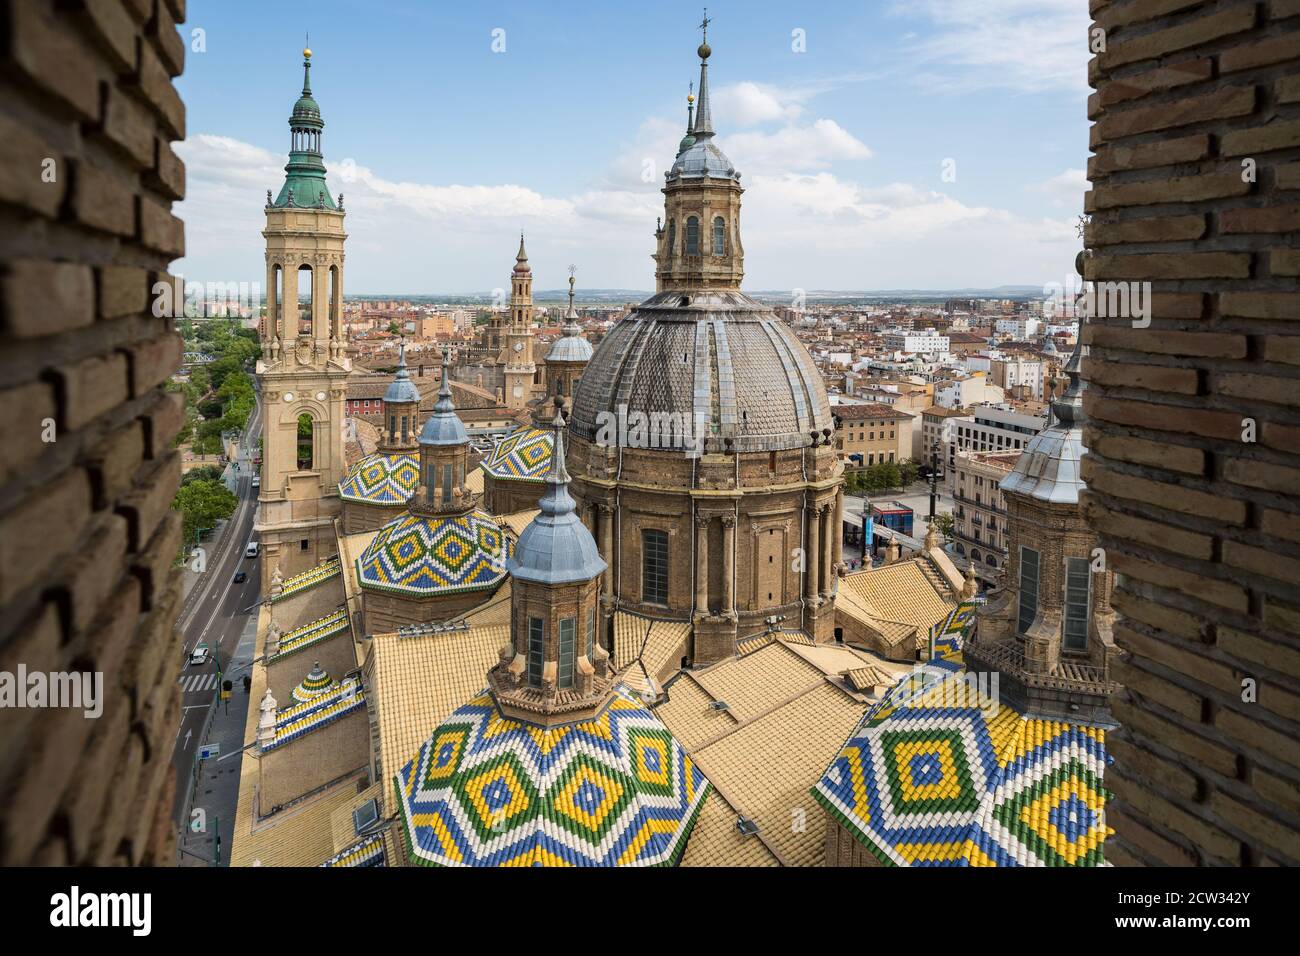 Zaragoza view of the city in Spain Stock Photo